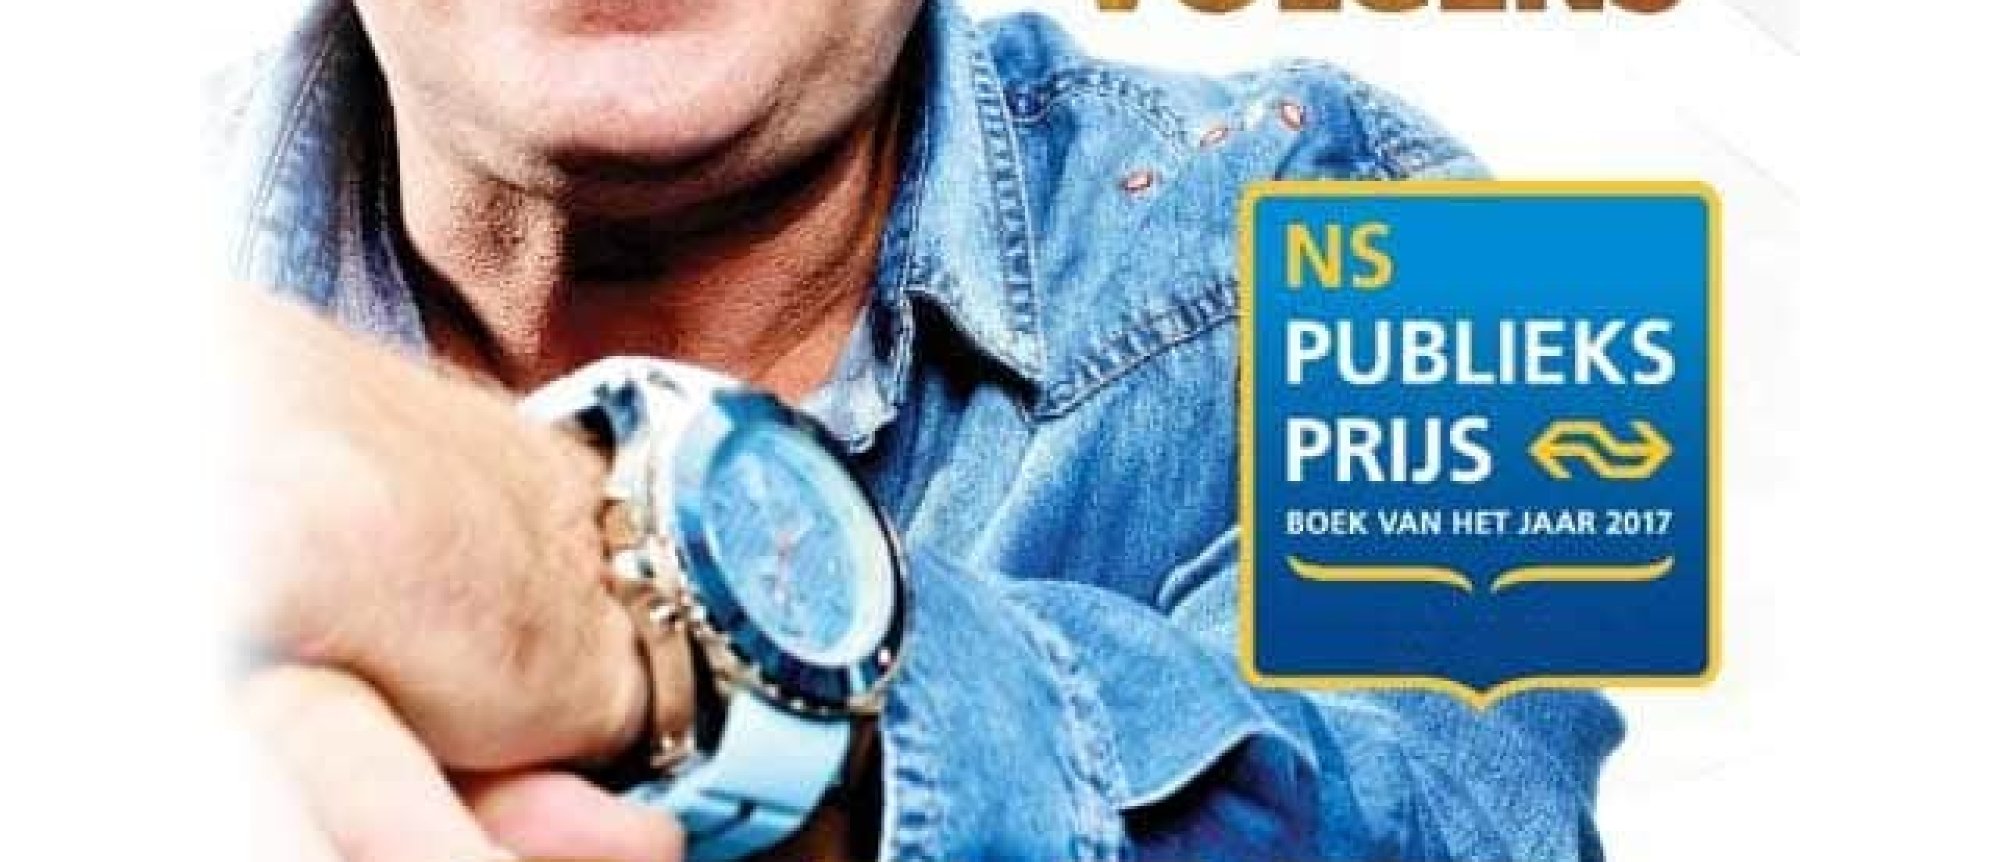 De wereld volgens Gijp wint NS Publieksprijs 2017